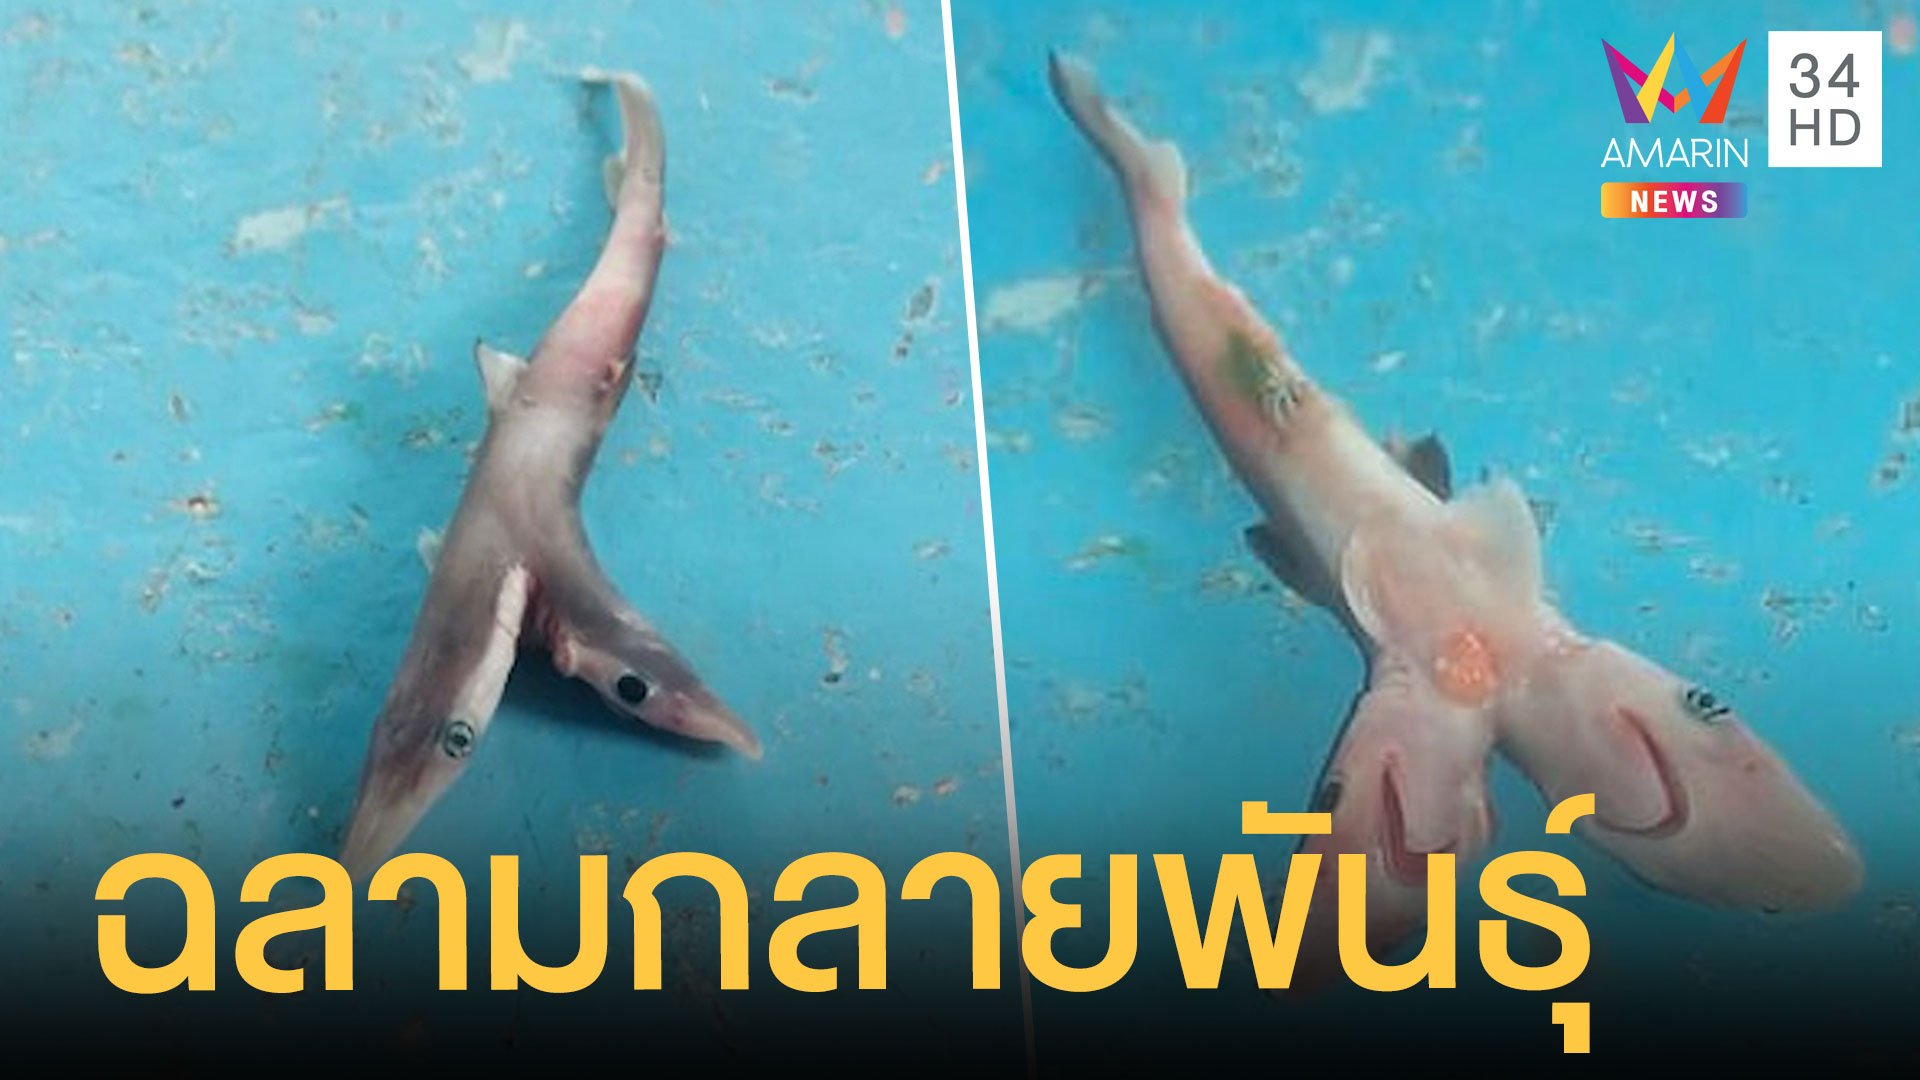 เจอฉลามสองหัว ชาวประมงจับได้ โยนคืนทะเล | ข่าวอรุณอมรินทร์ | 18 ต.ค. 63 | AMARIN TVHD34